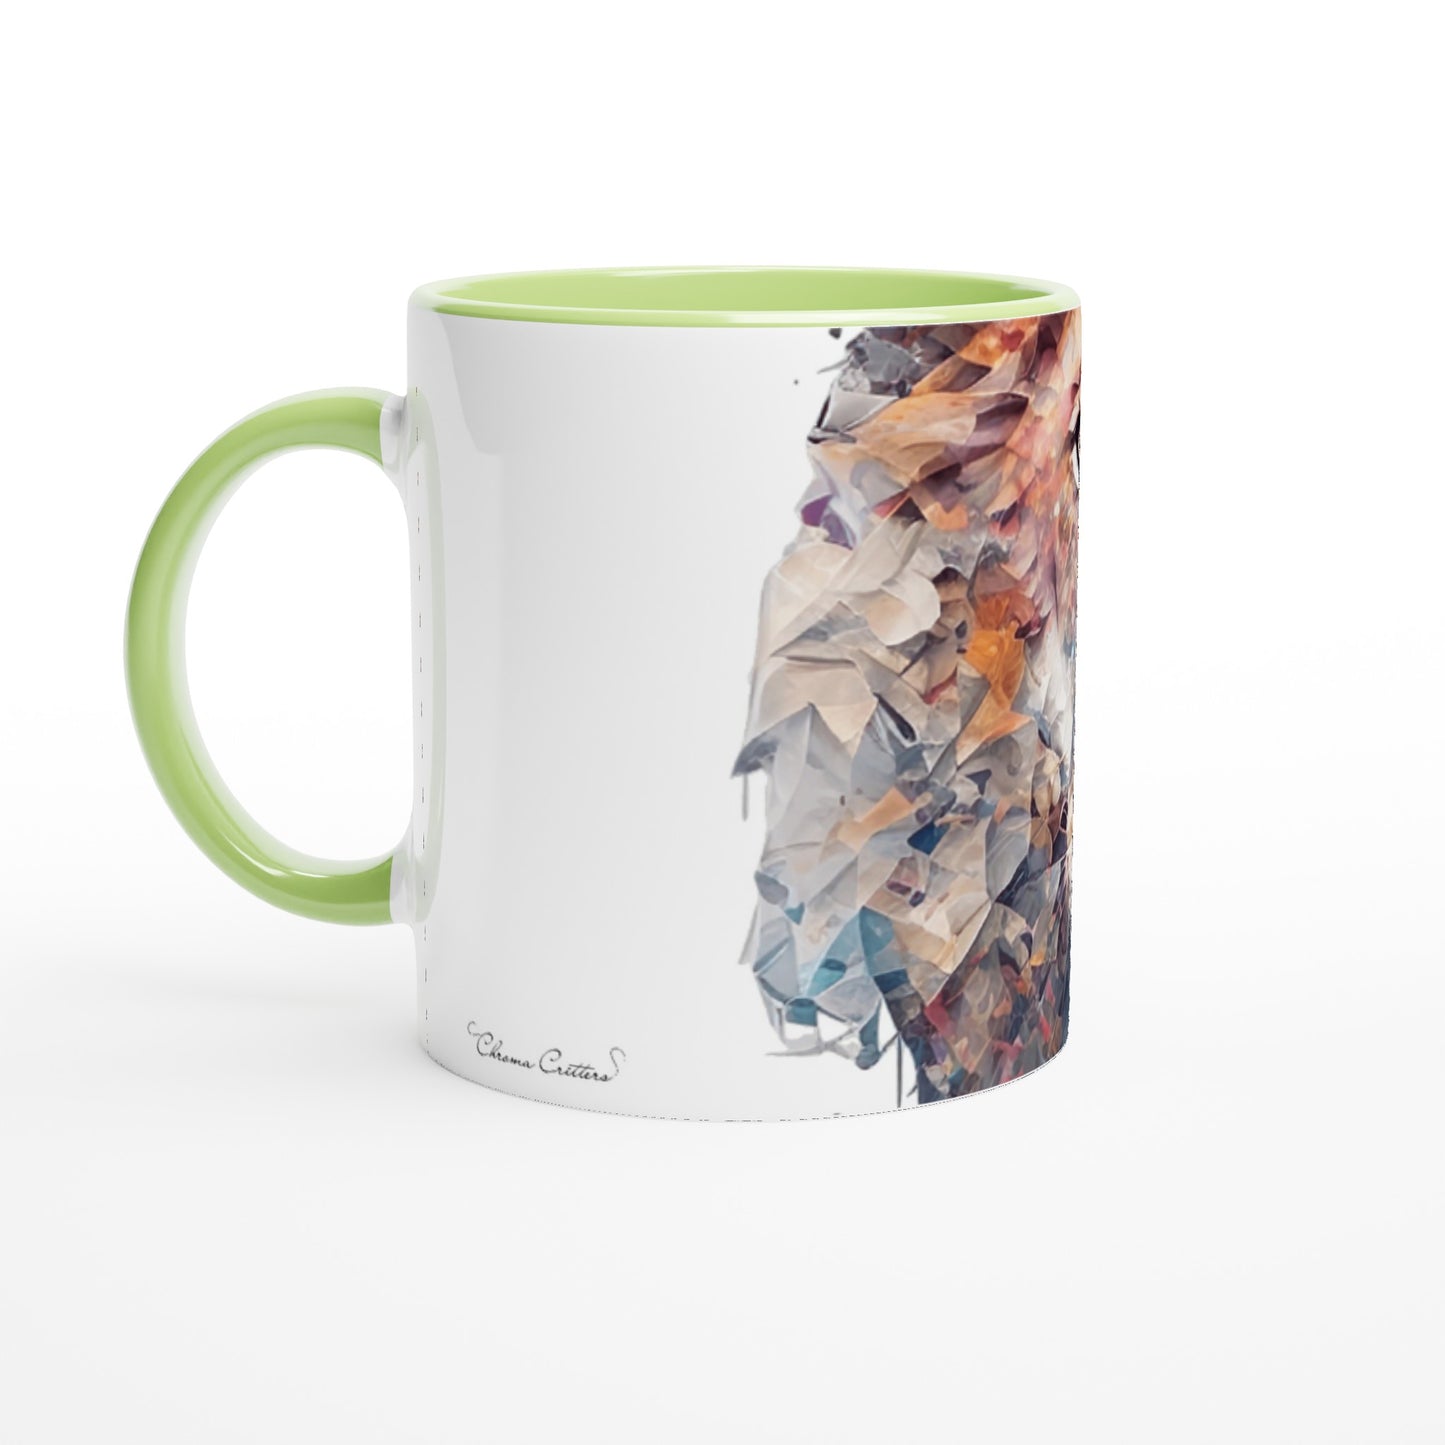 Lion - 11oz Ceramic Mug with Color Inside